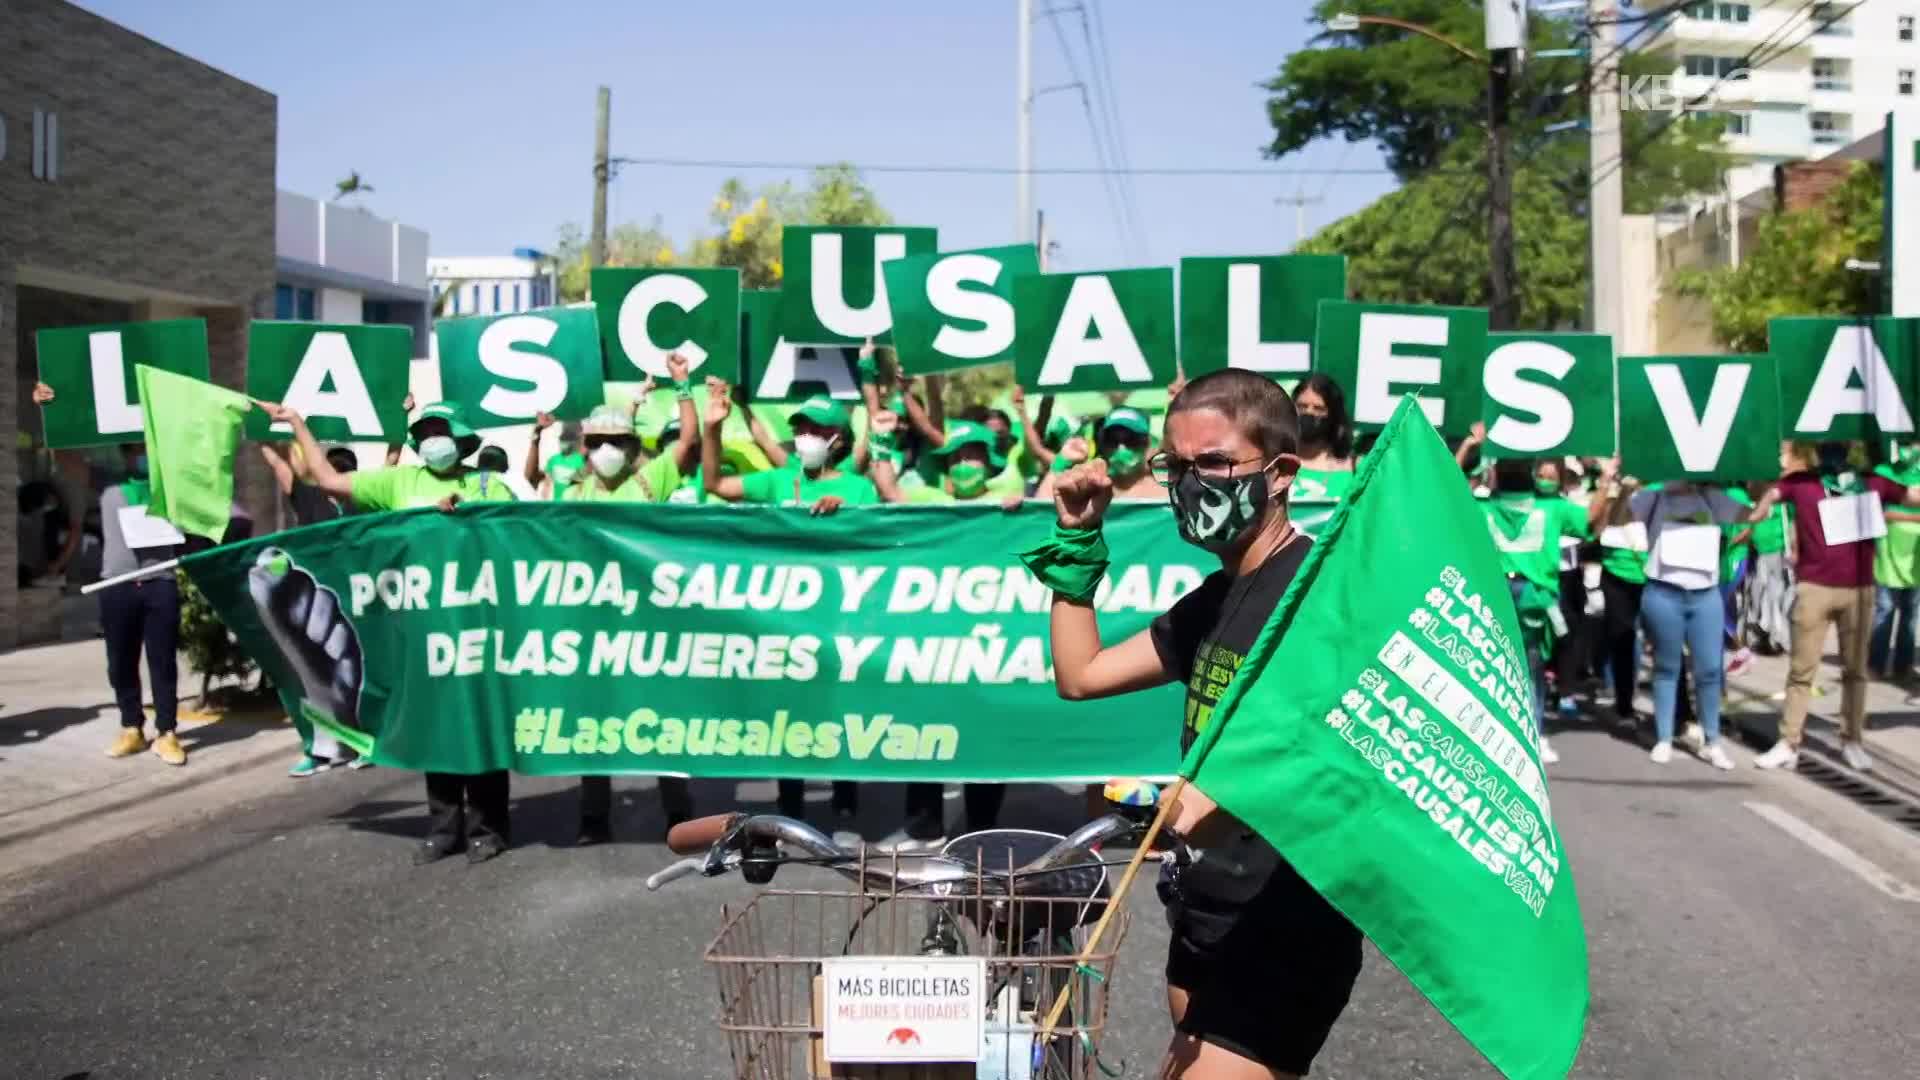 [지구촌 포토] 도미니카 공화국, 낙태 허용 촉구 시위